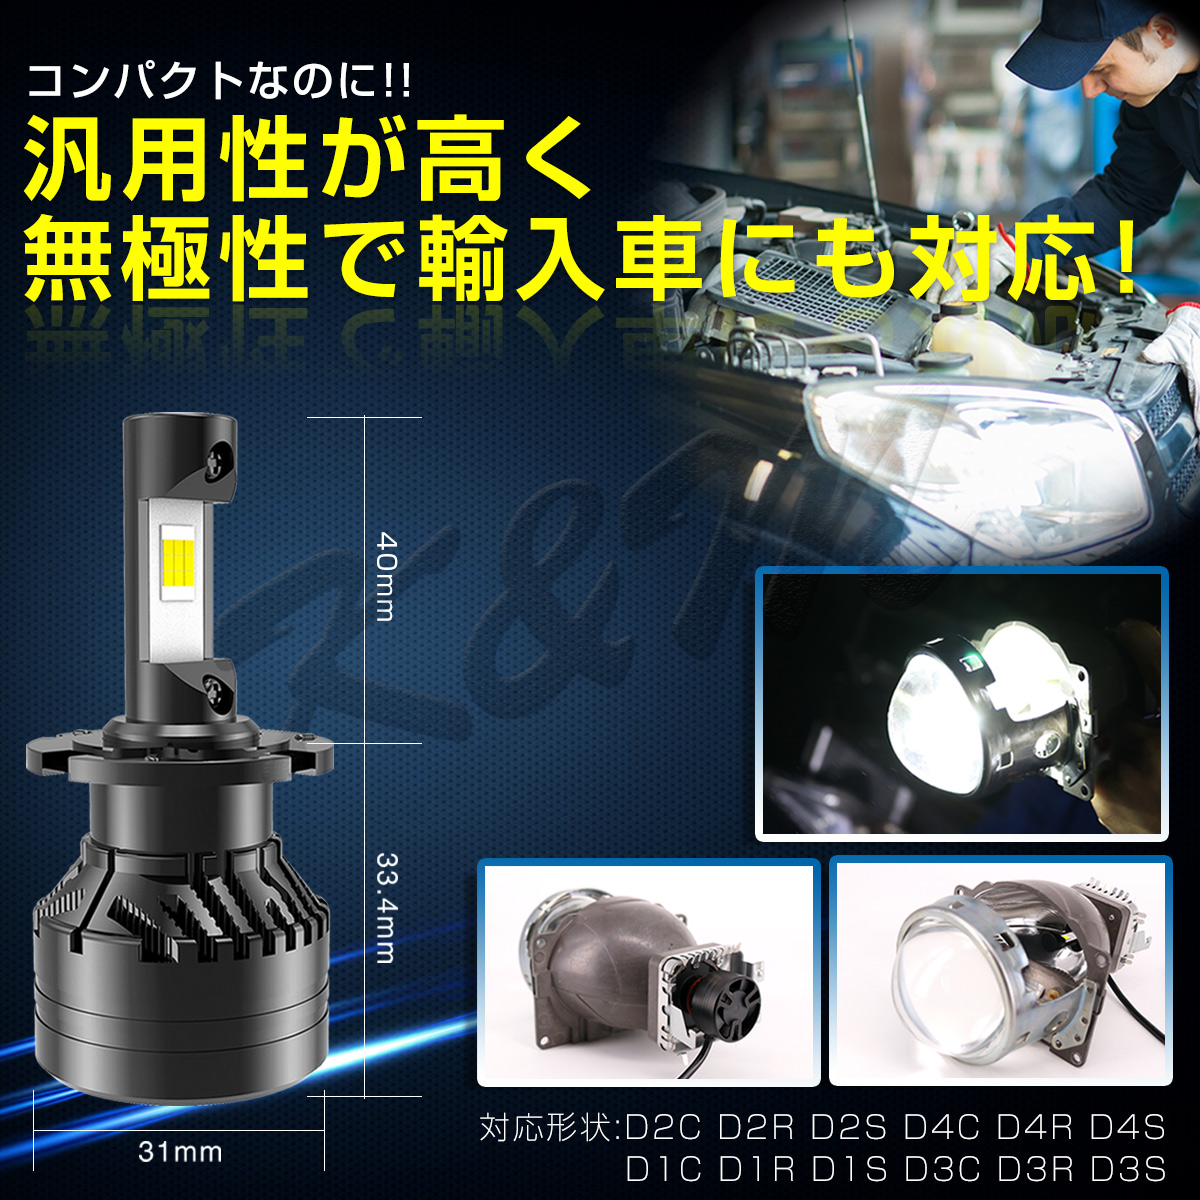 LEDヘッドライト LED D2C D2R D2S D4C D4R D4S共通 CREE 6500K(車検対応) 2個入り 6000LM ヘッドライト フォグランプ 12V 24V 対応 防水 宅配便送料無料 6ヶ月保証